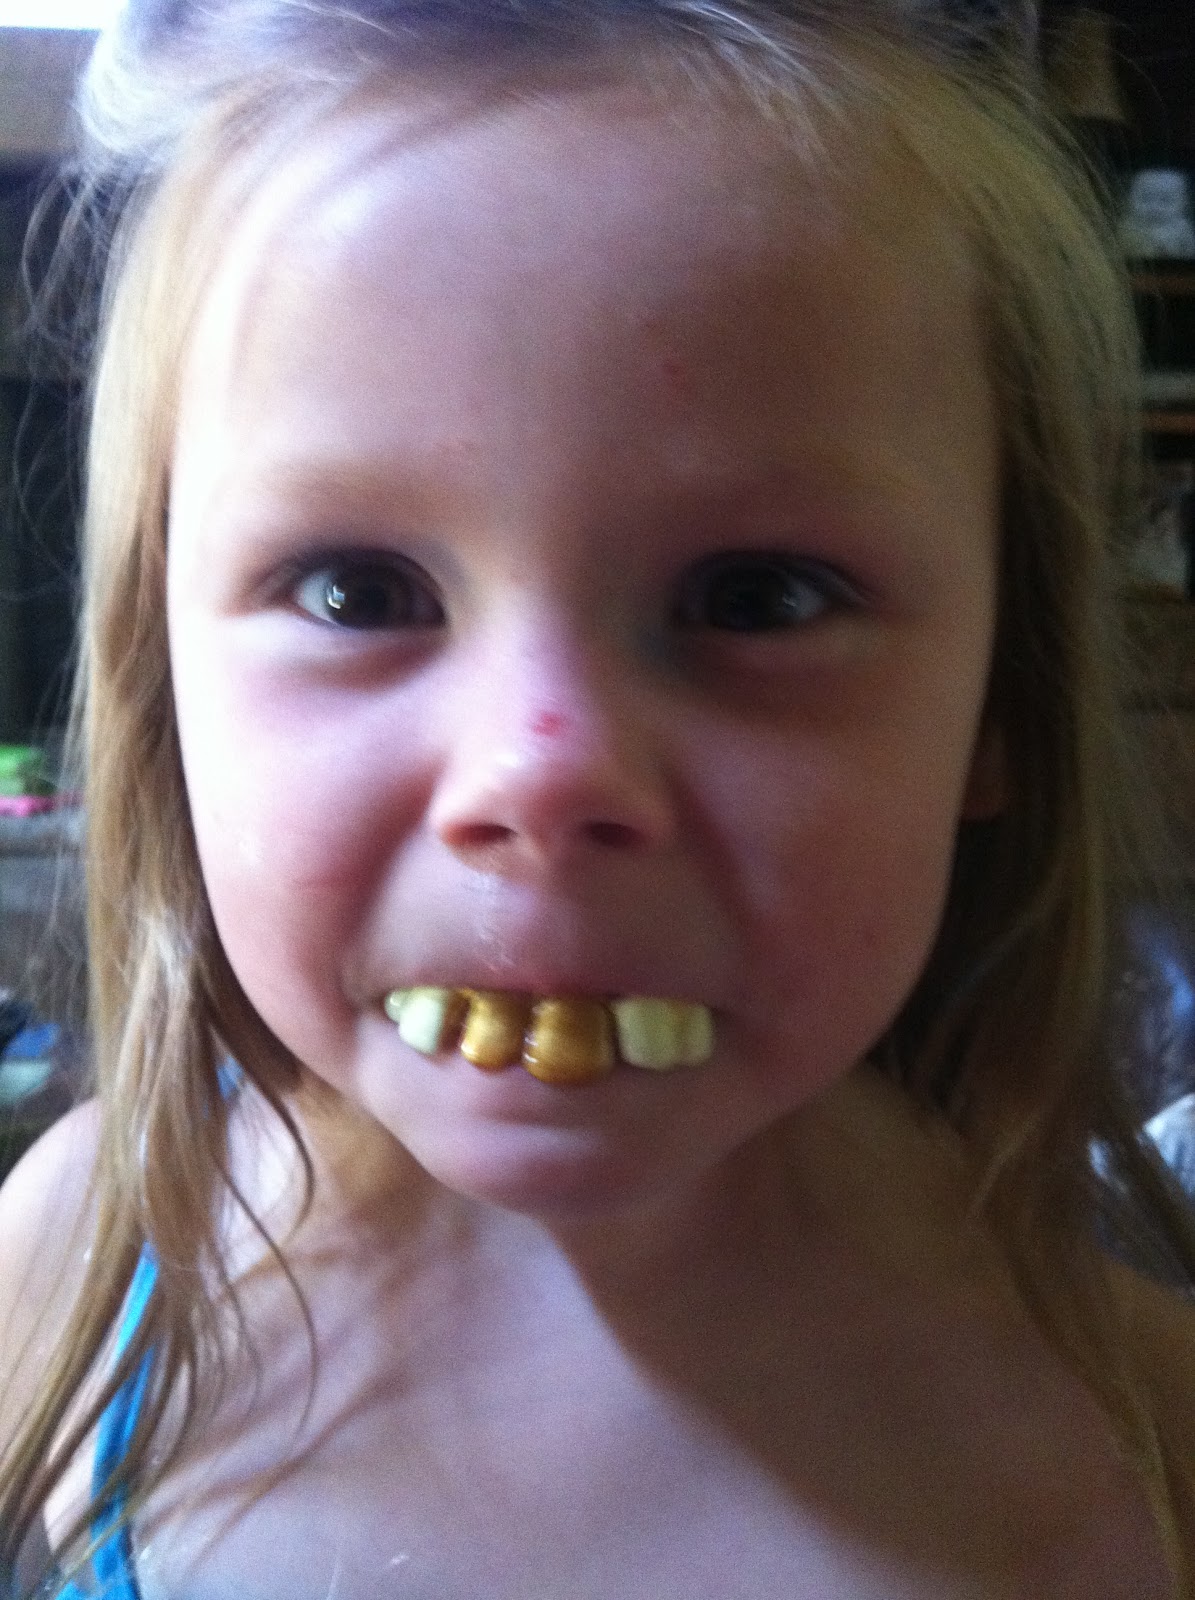 buck teeth girl - www.besthairstyletrends.com.